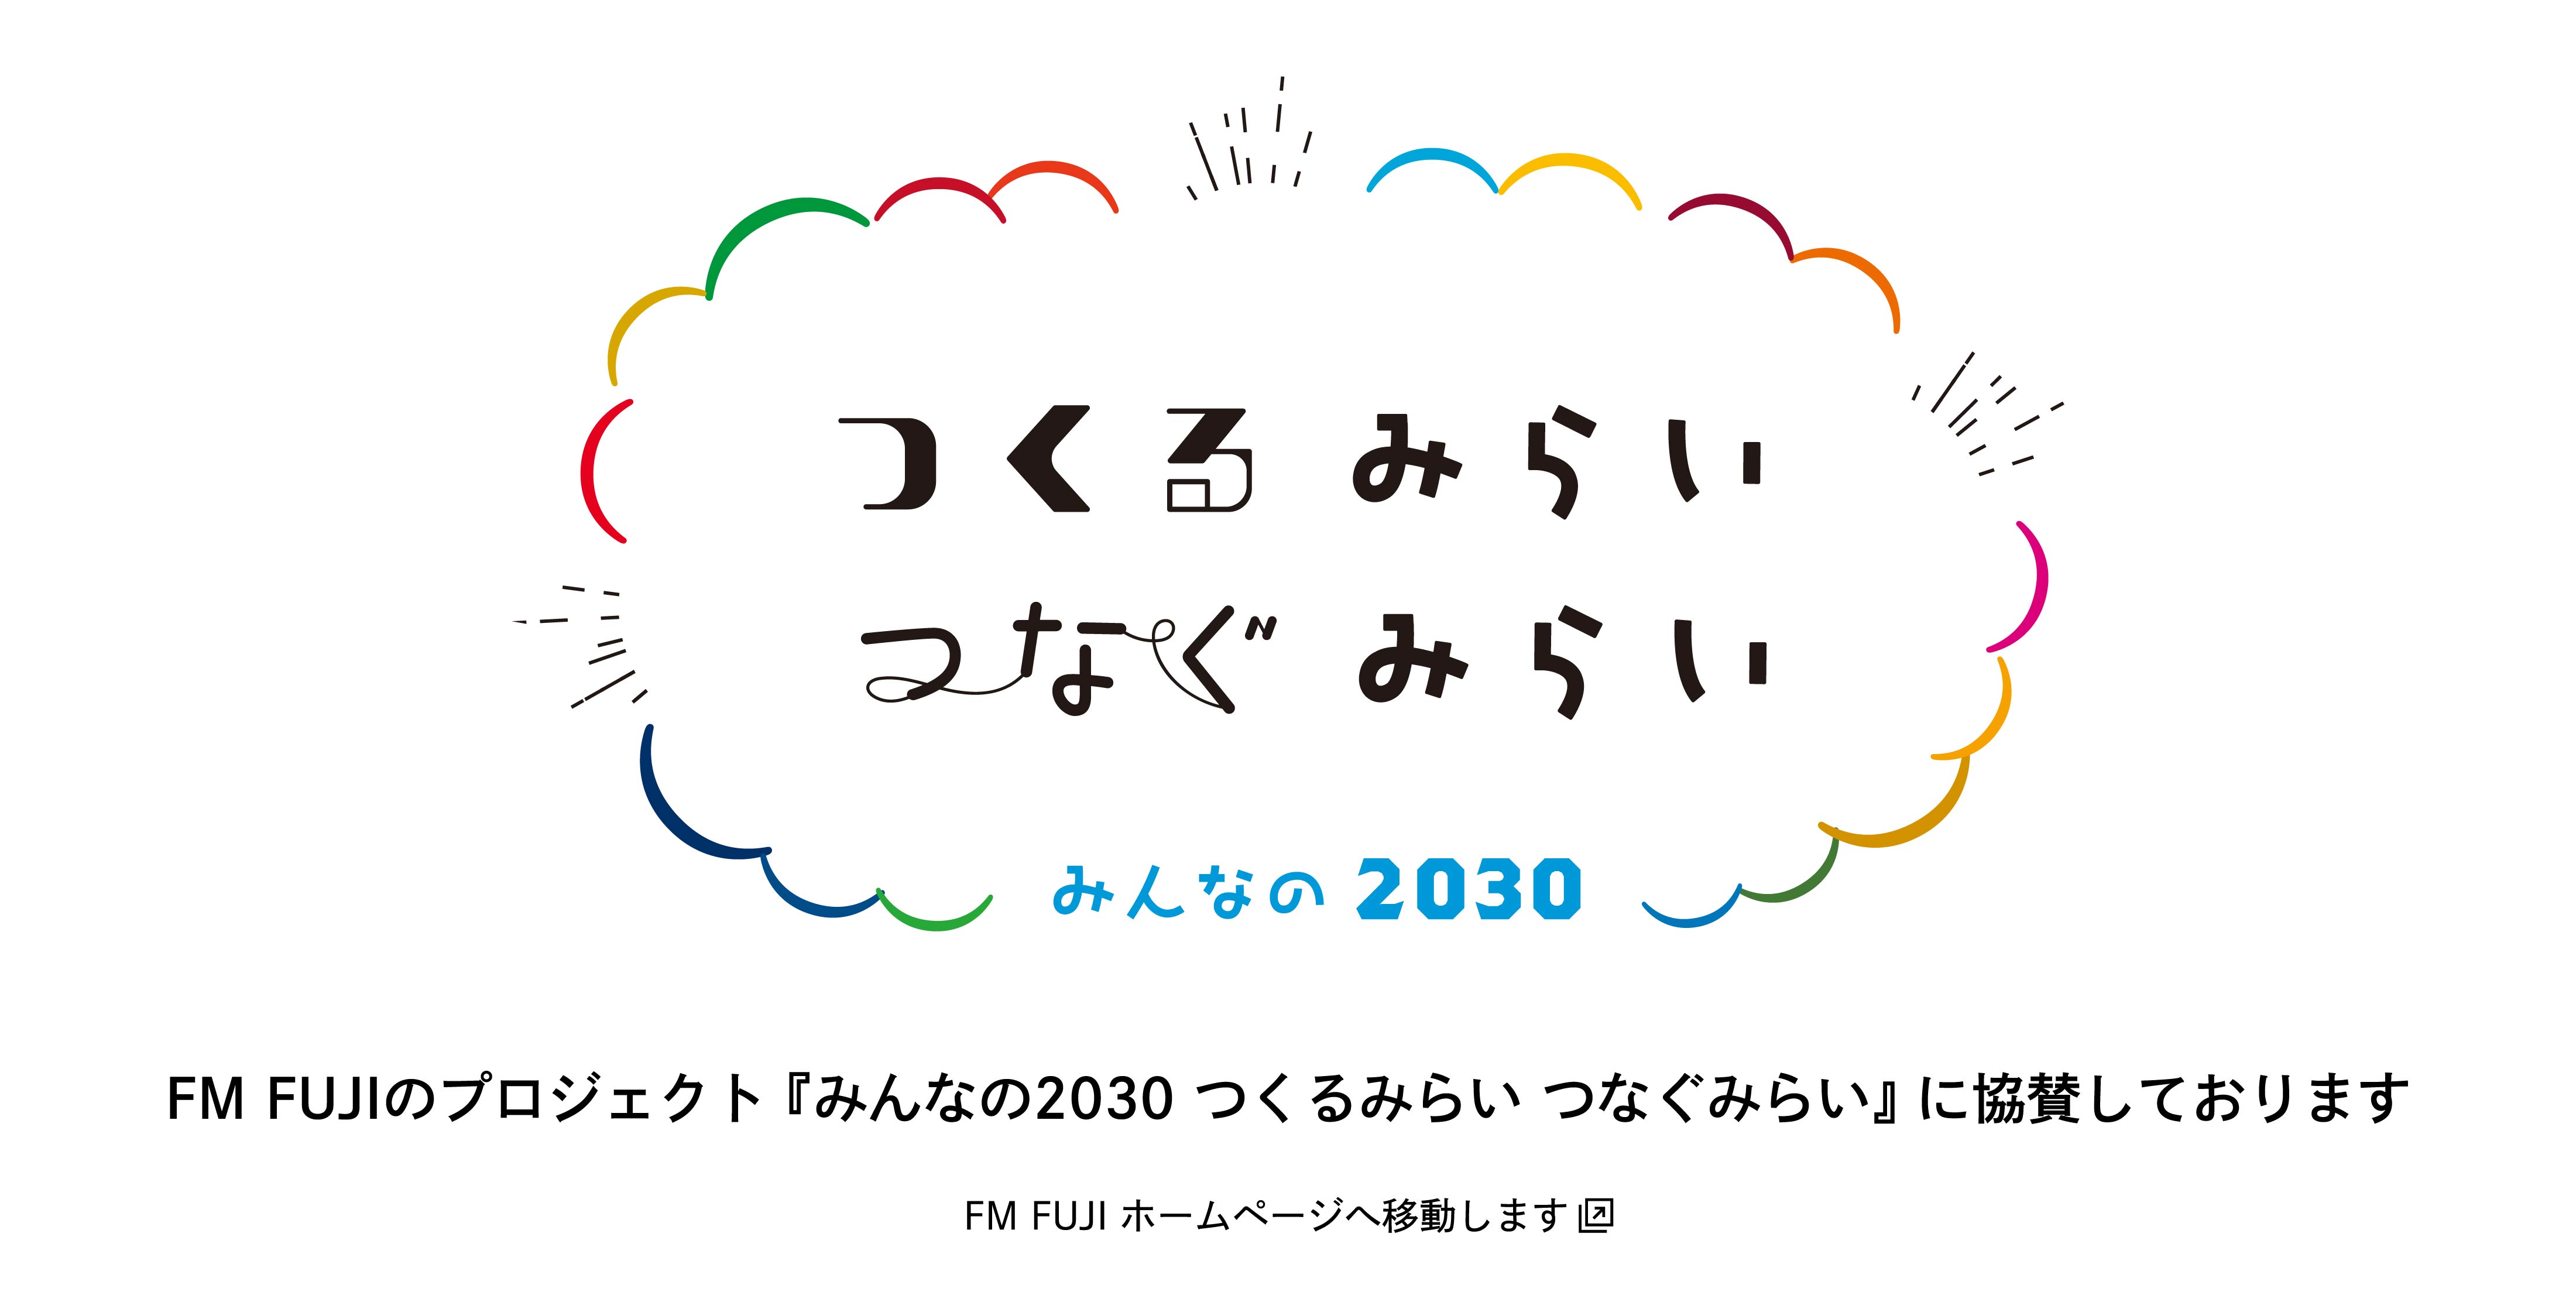 FM FUJIのプロジェクト 『みんなの2030 つくるみらい つなぐみらい』 に協賛しております